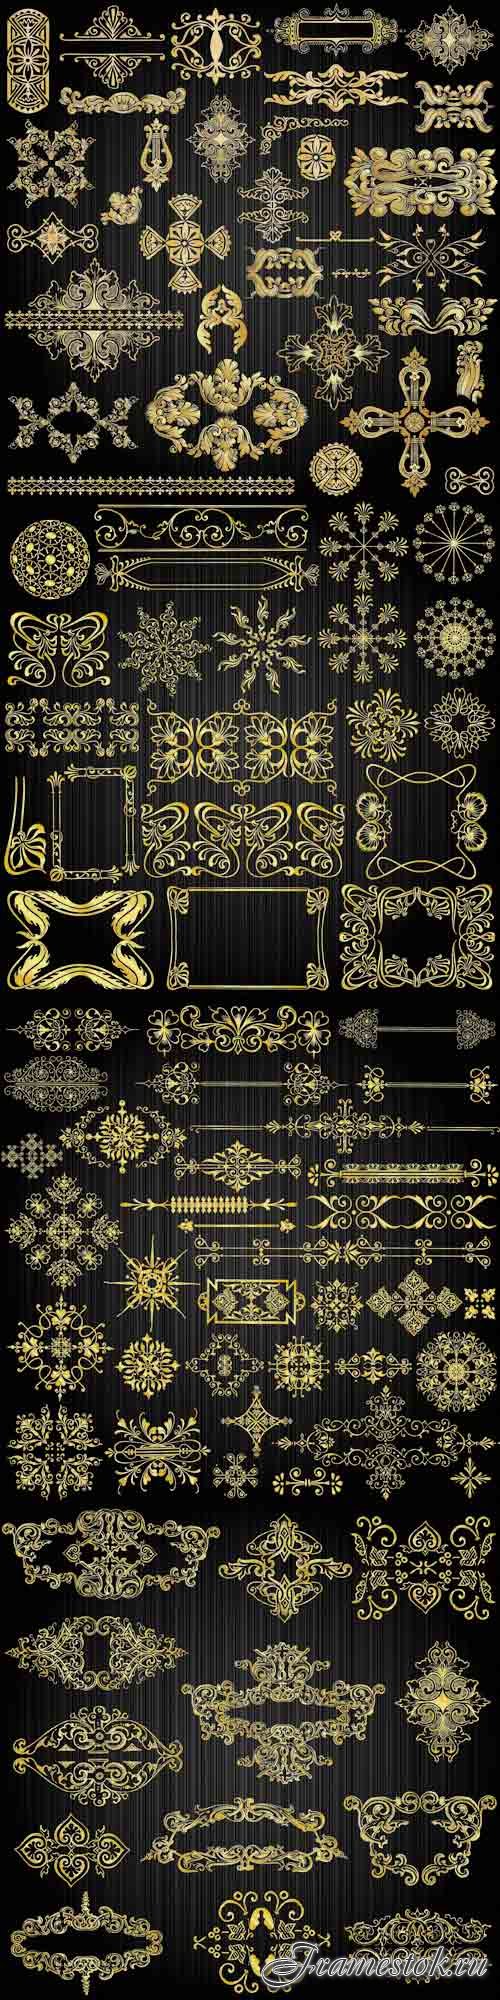 Beautiful gold pattern